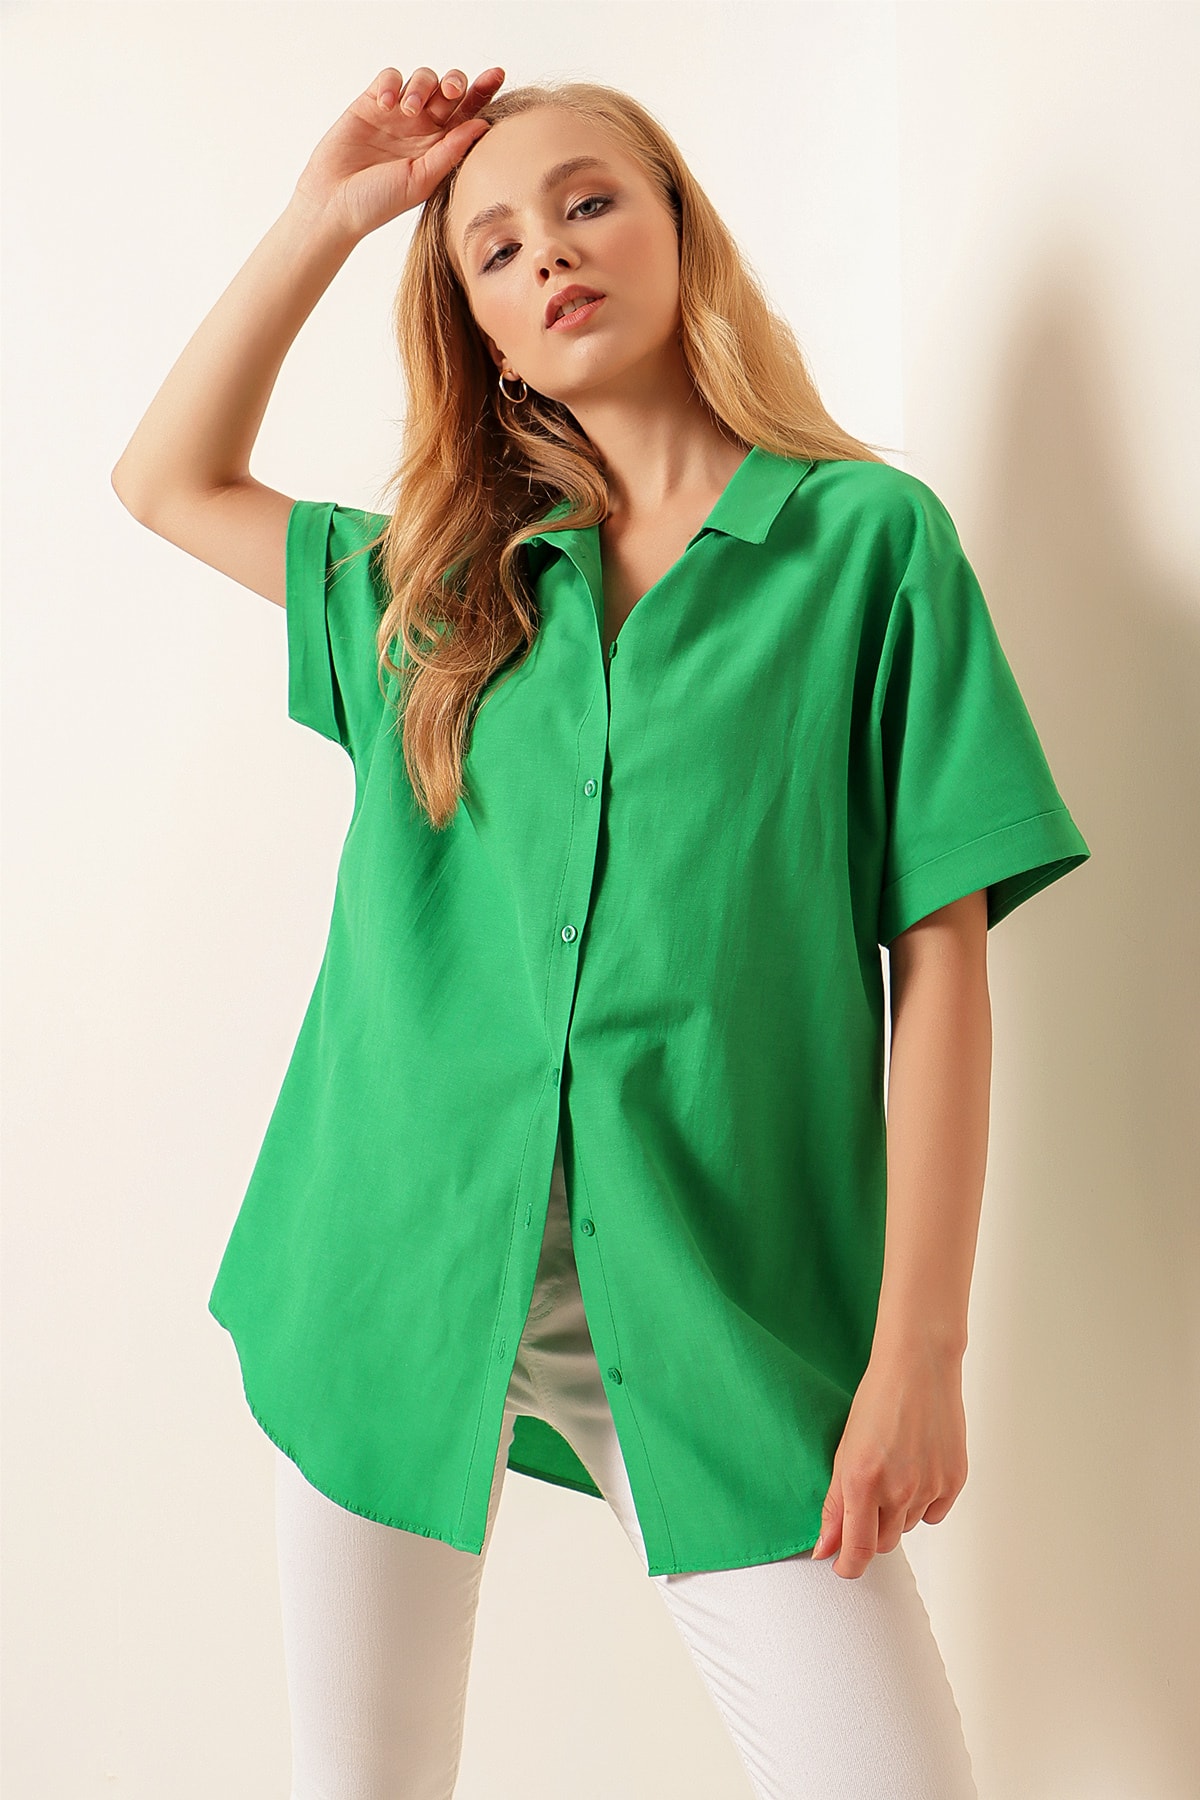 Bigdart 20120 Oversized Short Sleeve Shirt - Green